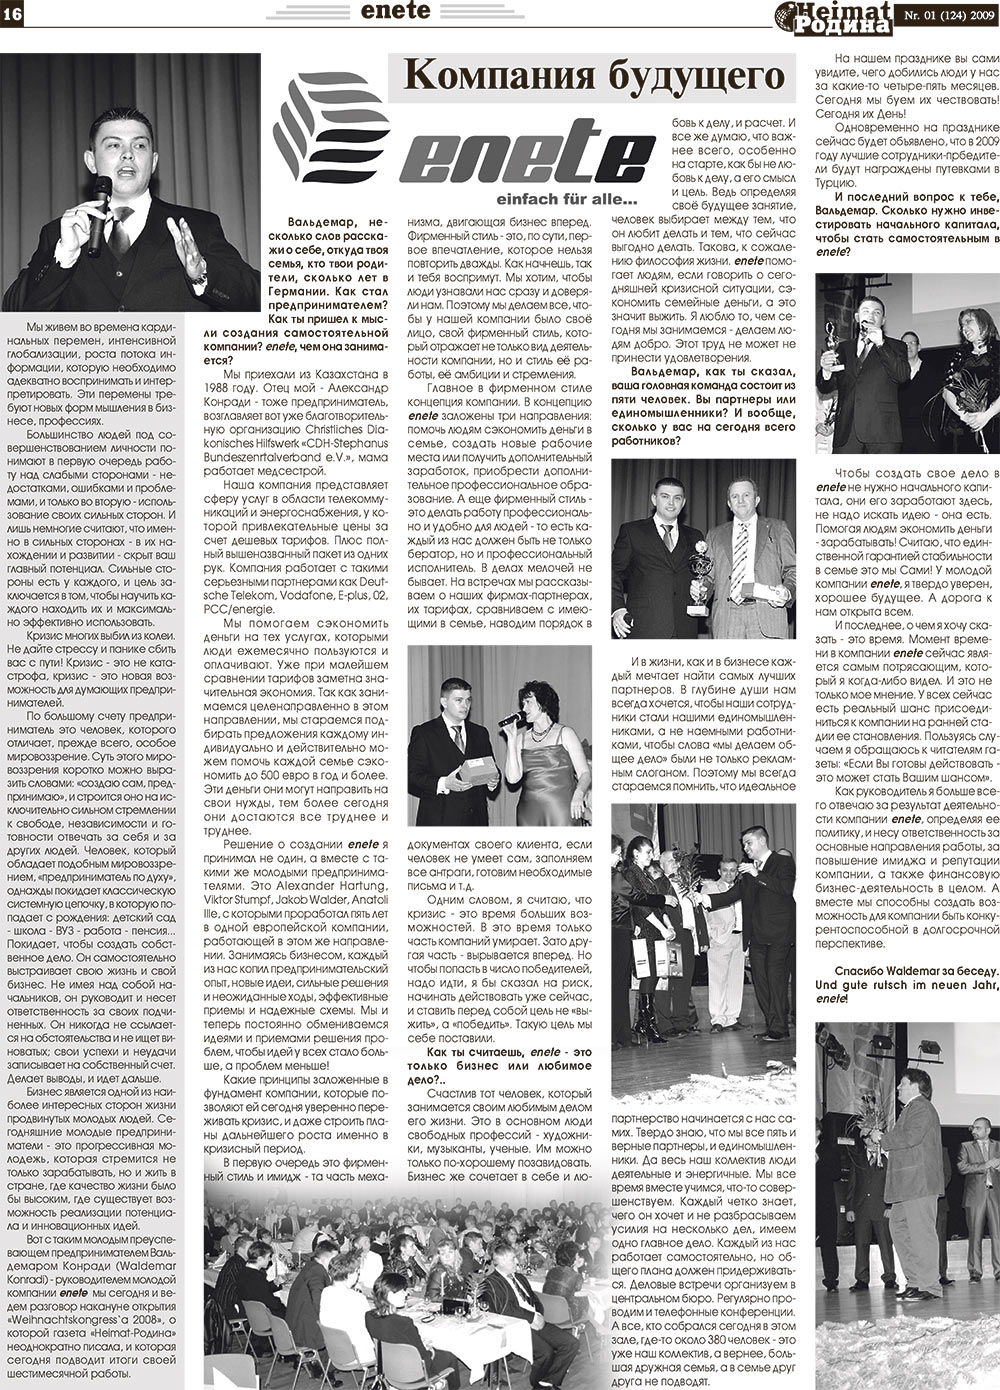 Heimat-Родина (газета). 2009 год, номер 1, стр. 16